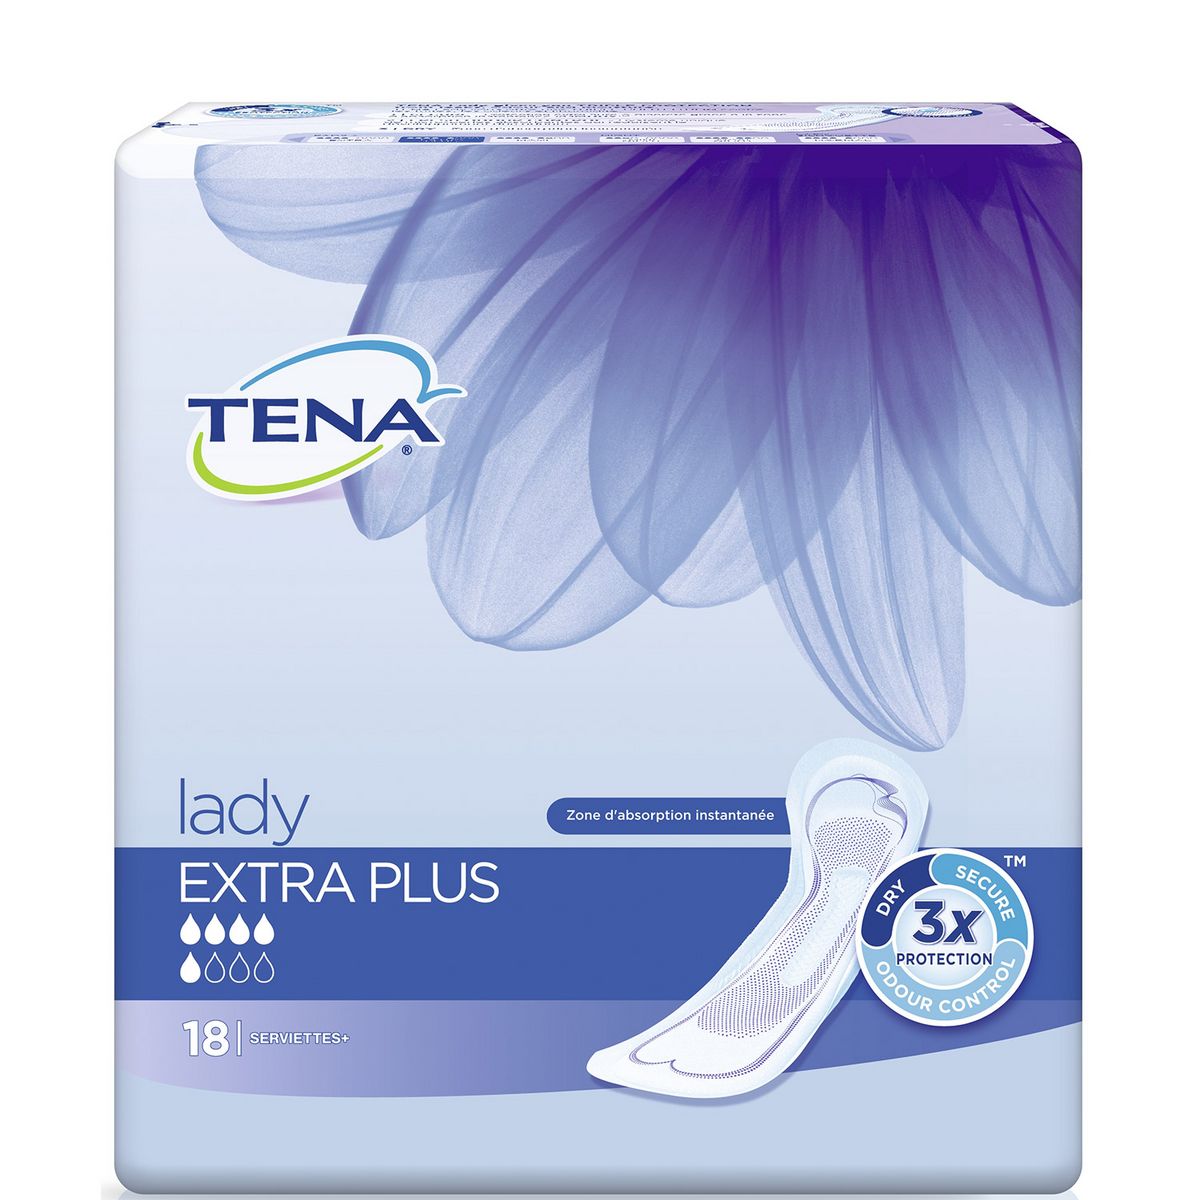 TENA Tena Lady Serviettes hygiéniques sans ailettes extra plus x18 18 serviettes